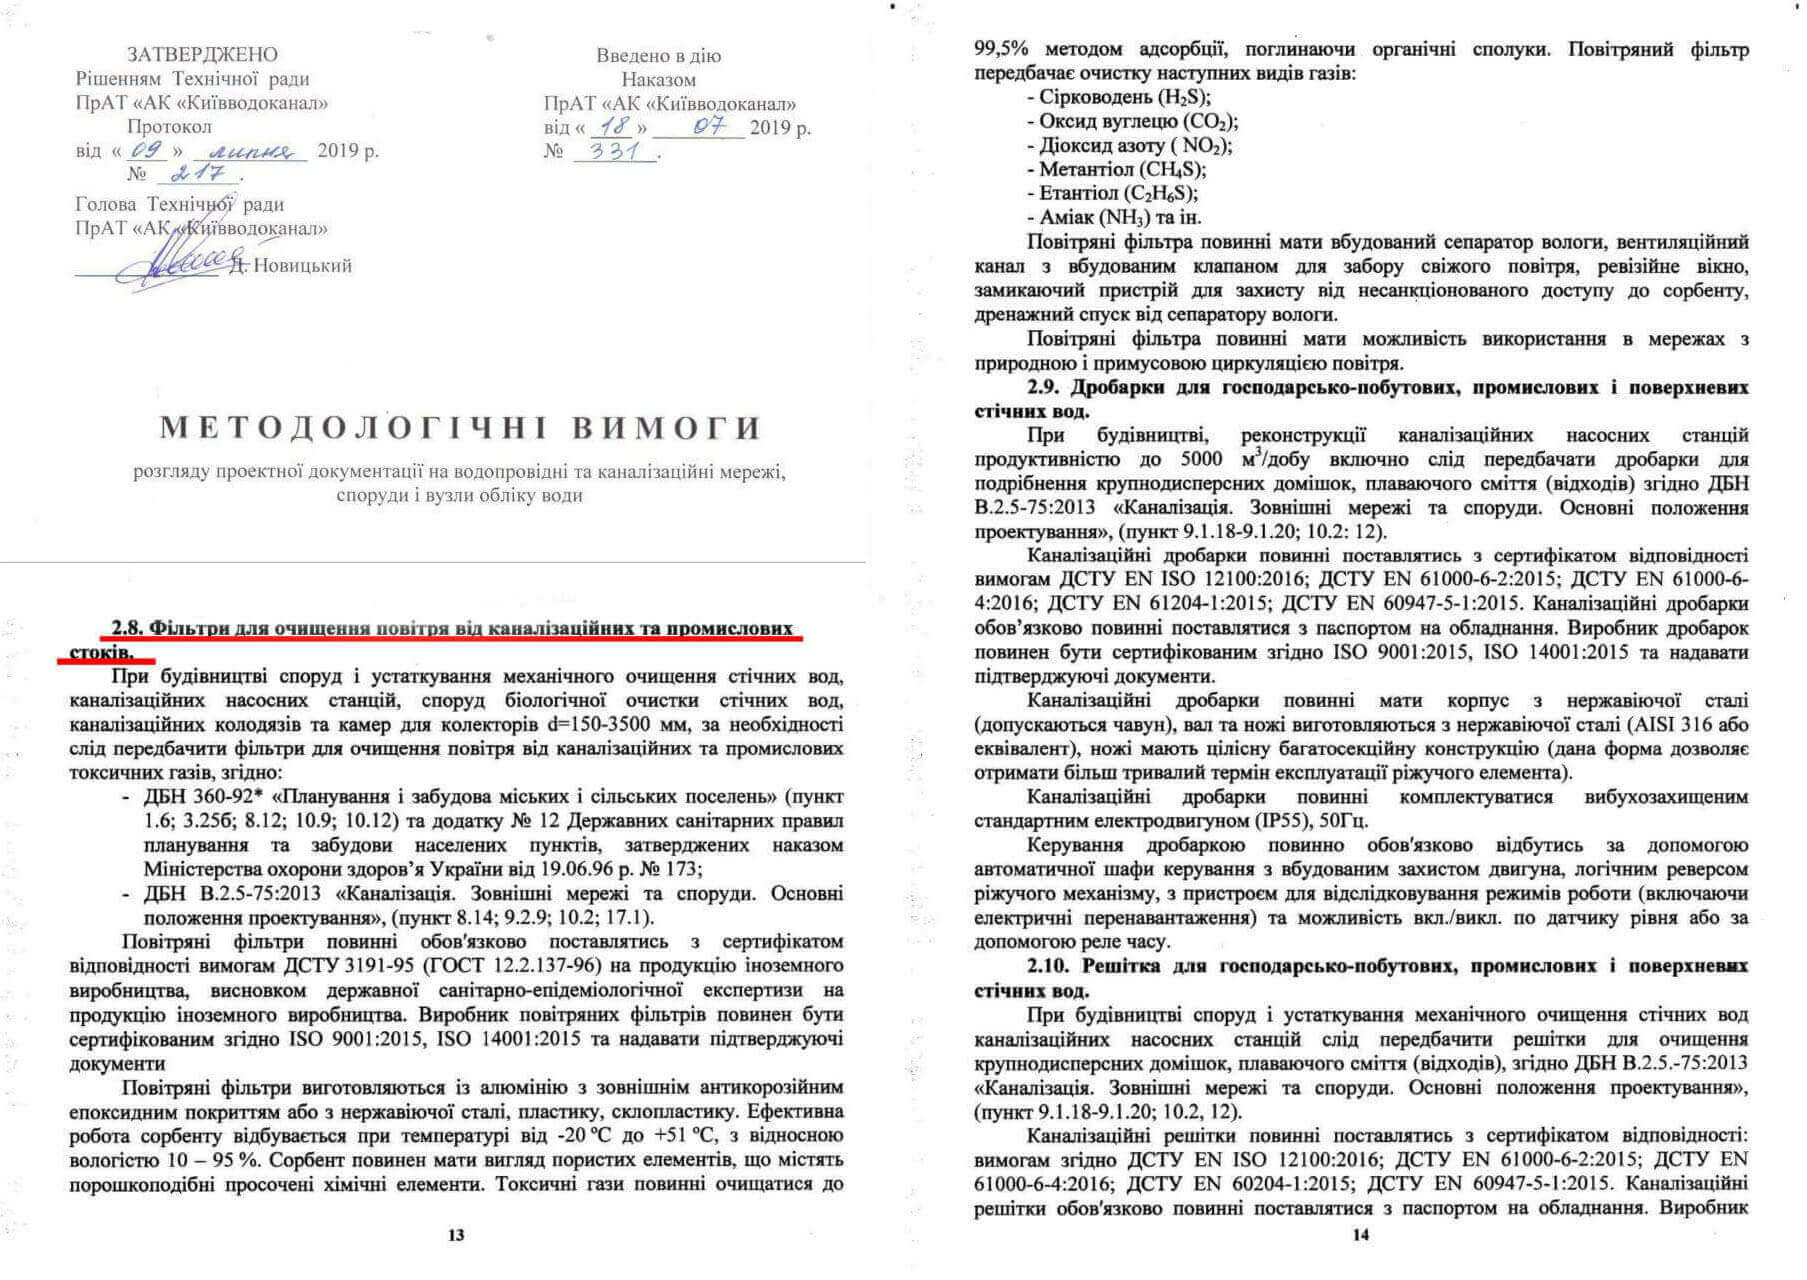 методологические требования Киевводоканал 2019 воздушные фильтры